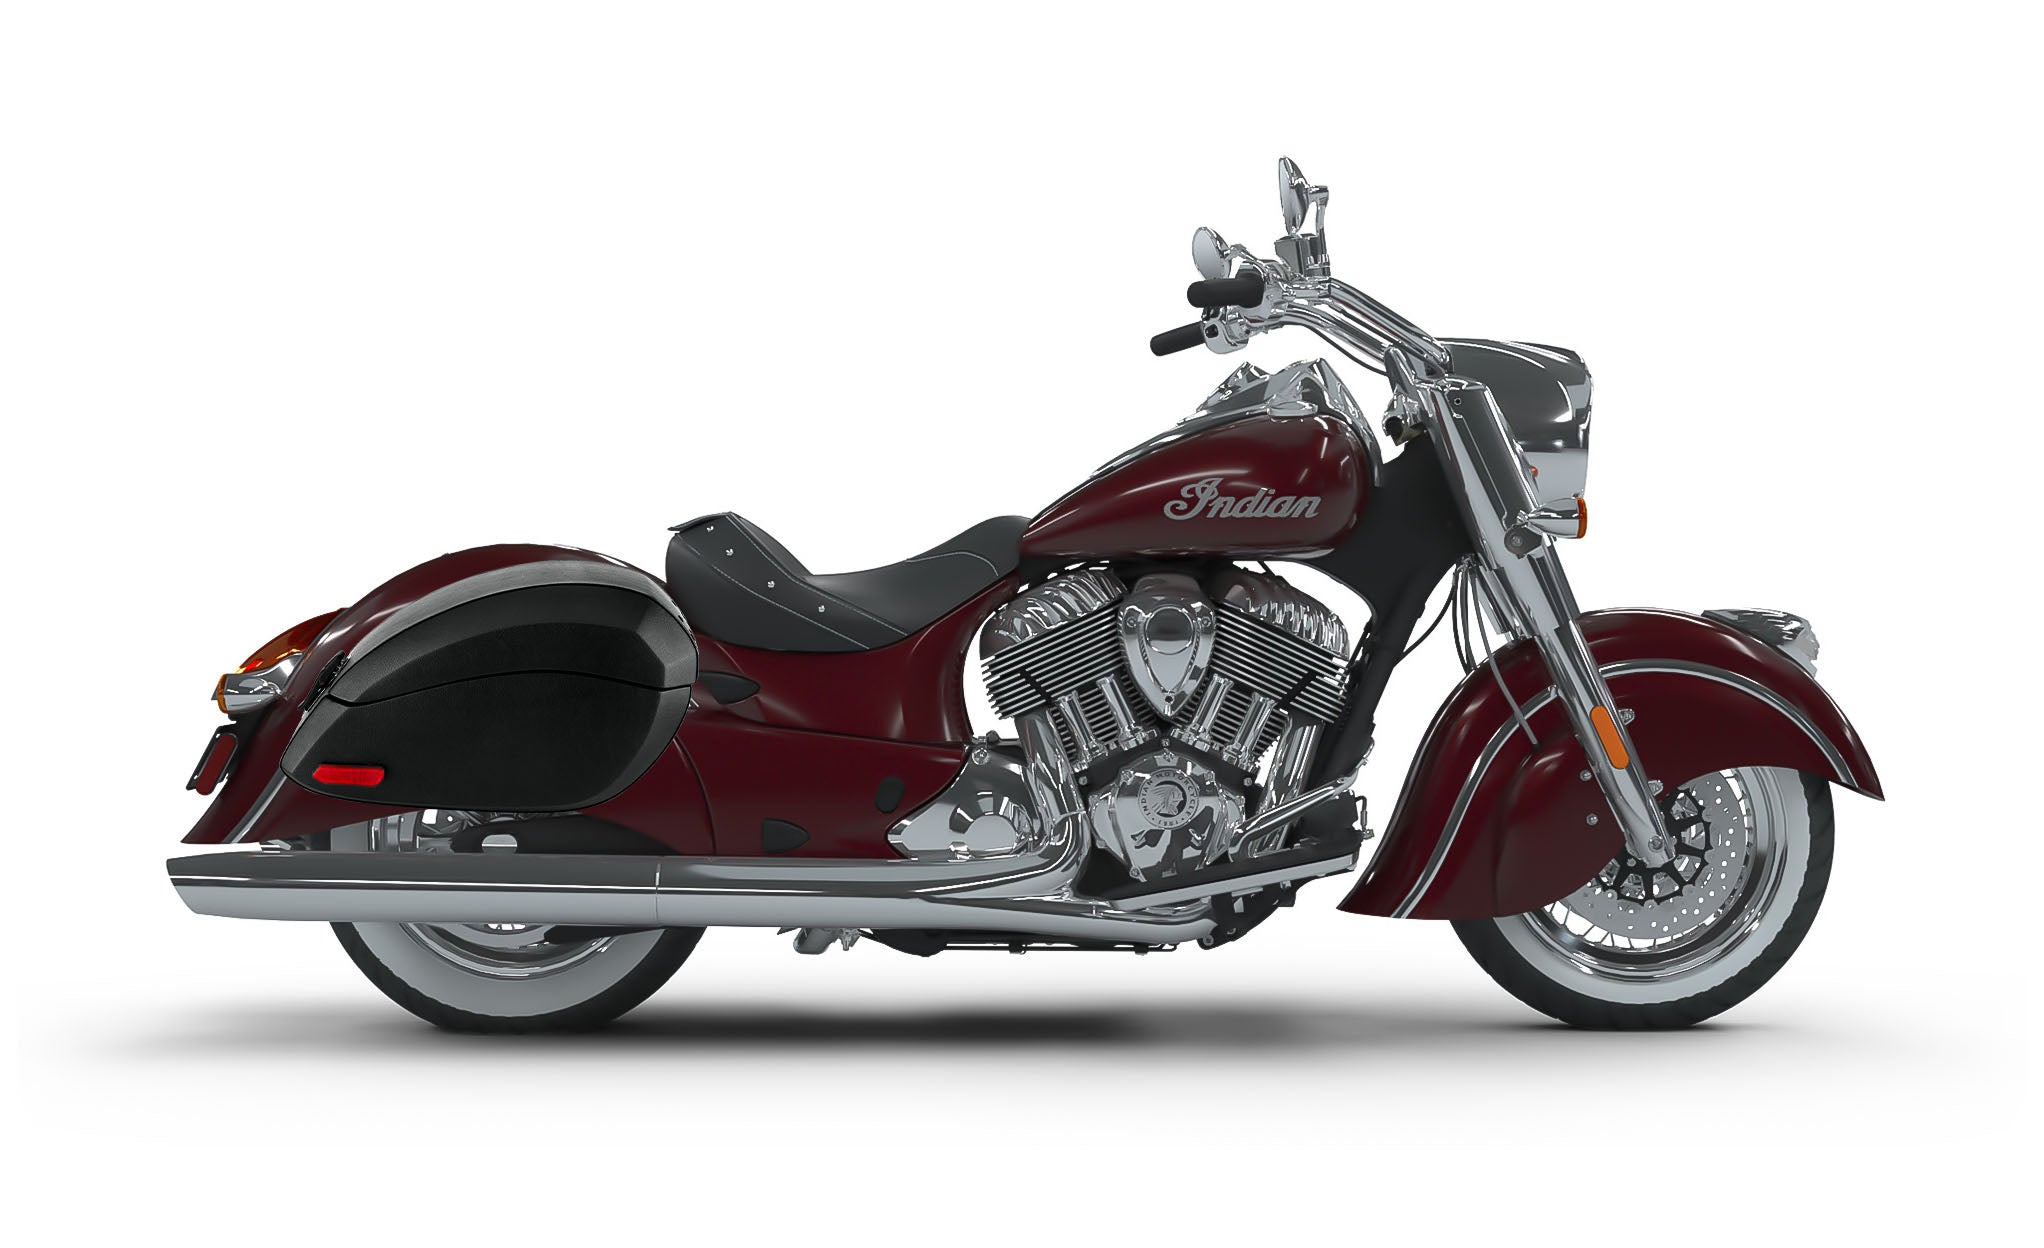 Viking Phantom Large Indian Chief Classic Leather Wrapped Motorcycle Hard Saddlebags on Bike Photo @expand